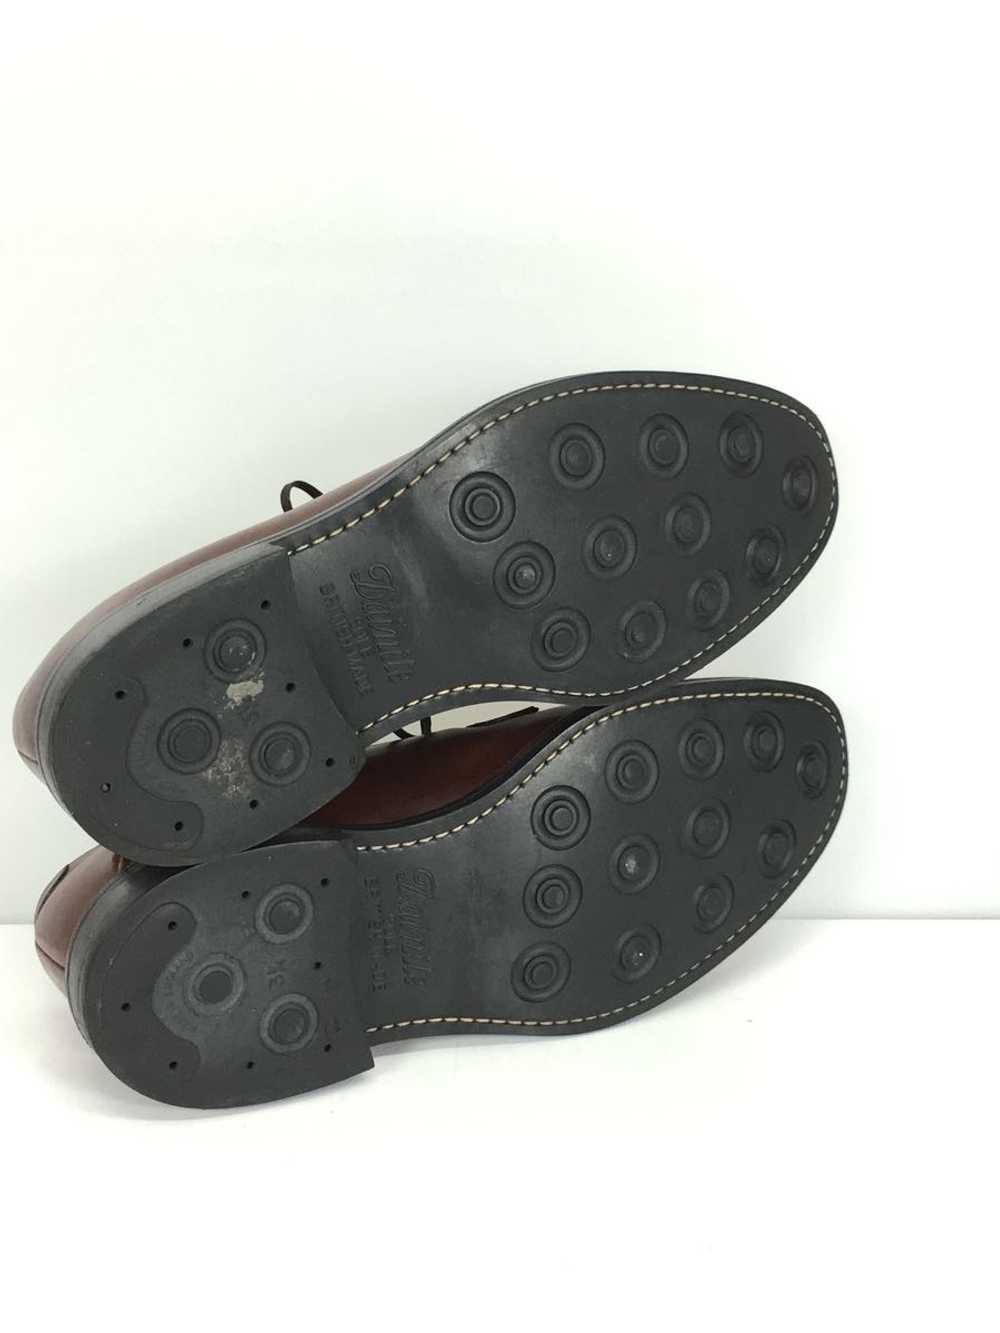 Jalan Sriwijaya Dress Shoes/Uk8.5/Brw/Leather/986… - image 4